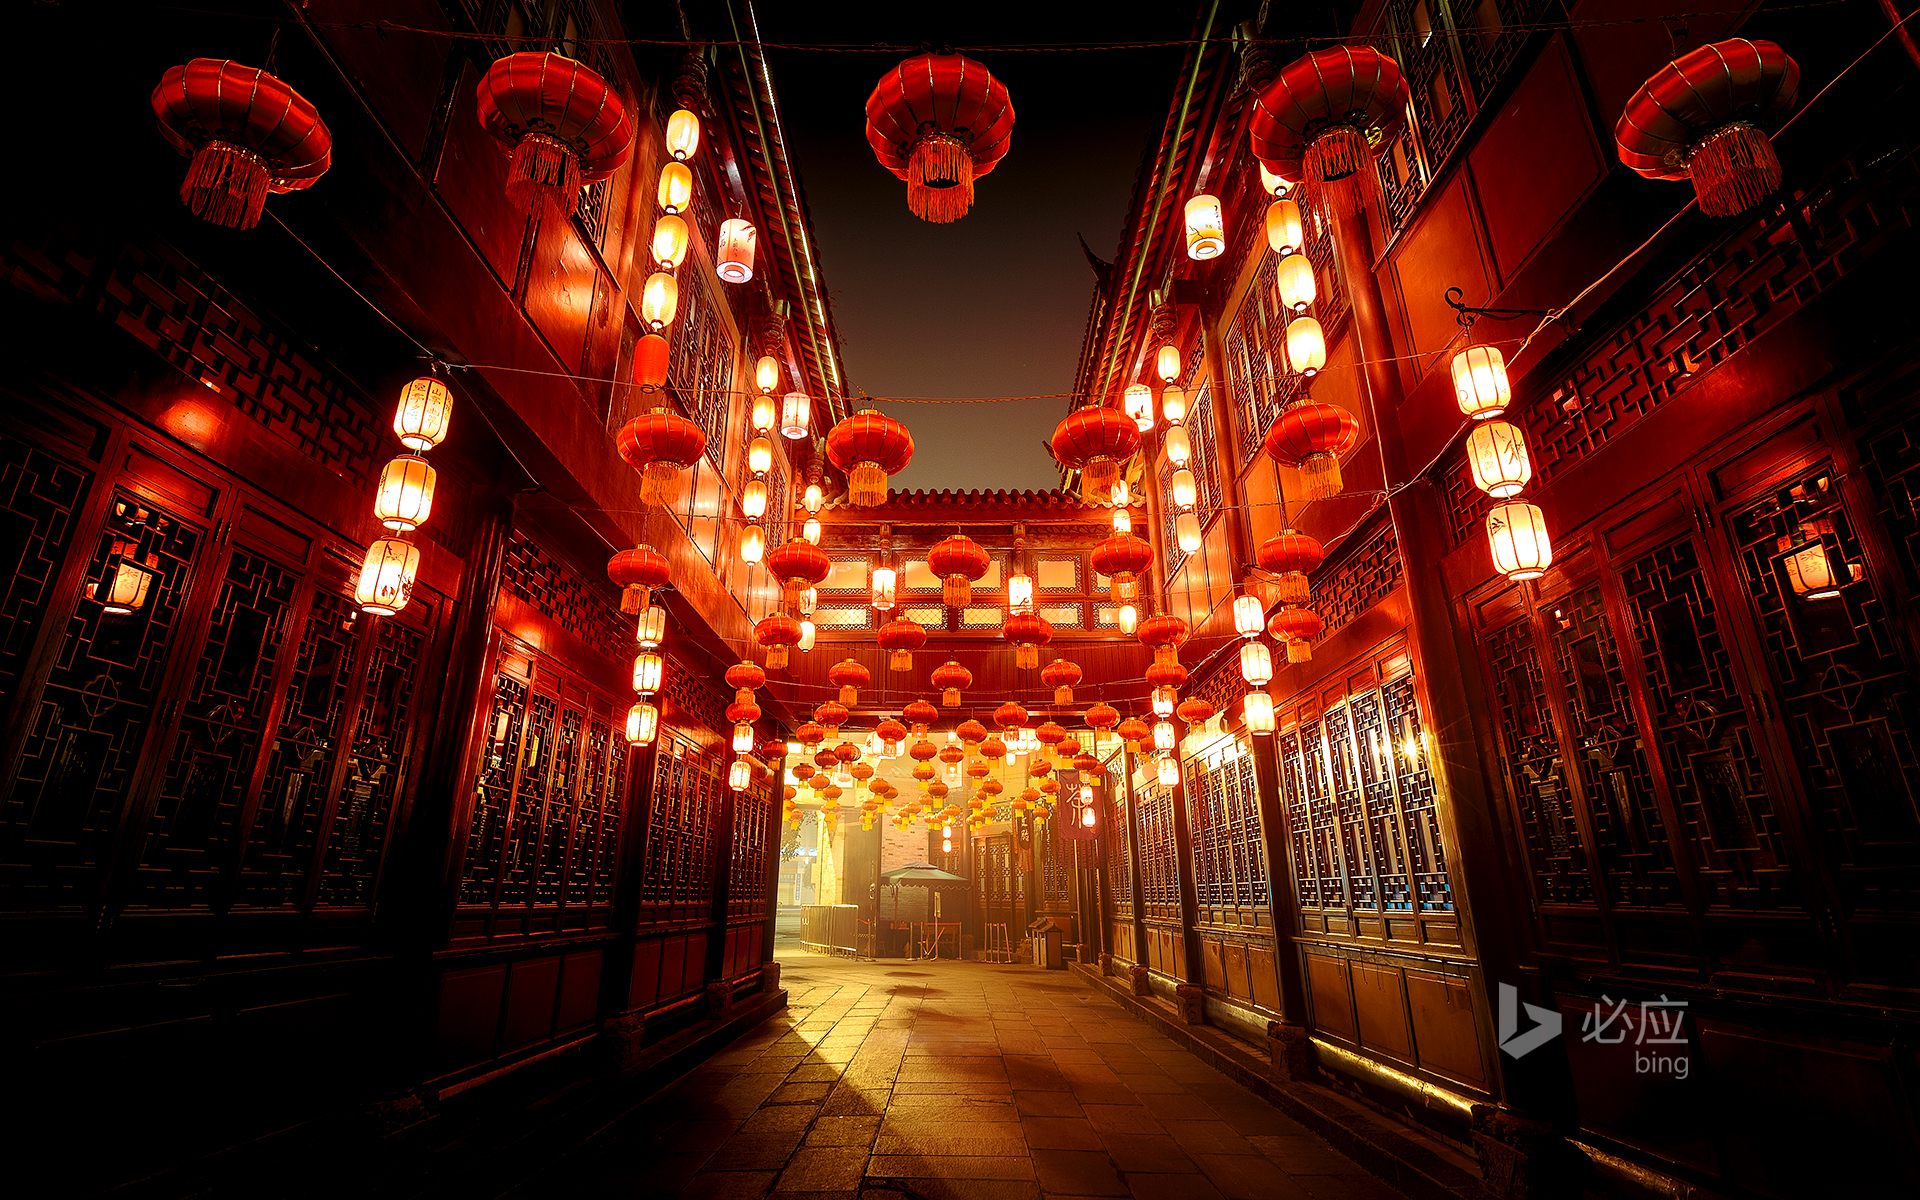 China, Sichuan, Chengdu, beautiful Jinli Ancient Street